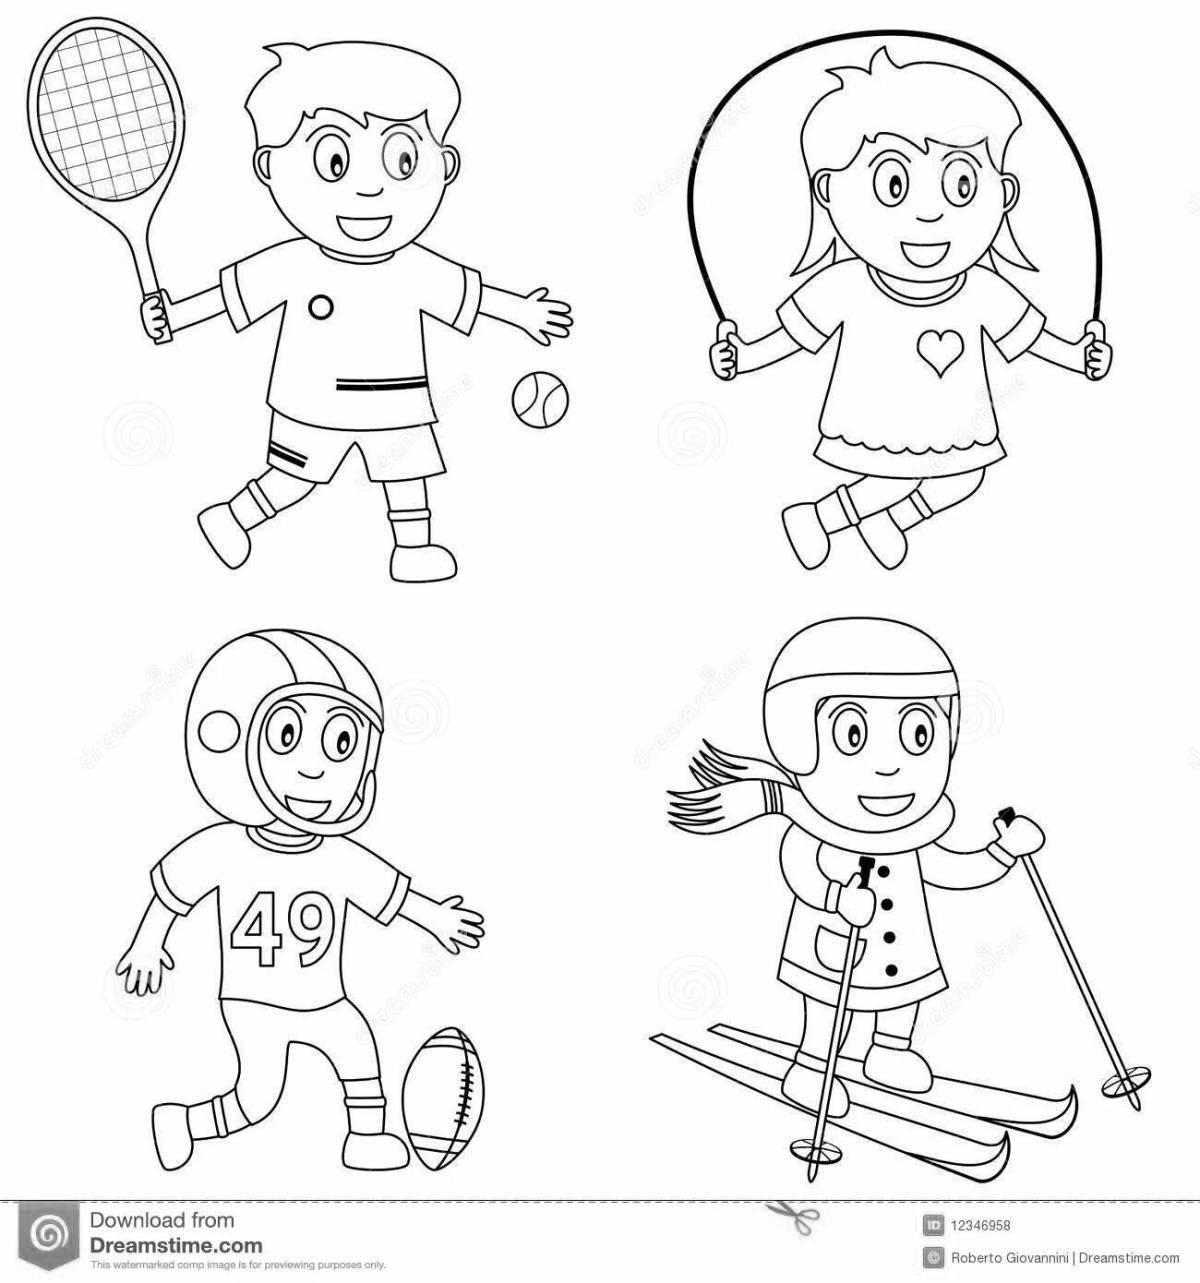 Веселые раскраски спортсмены разных видов спорта для детей